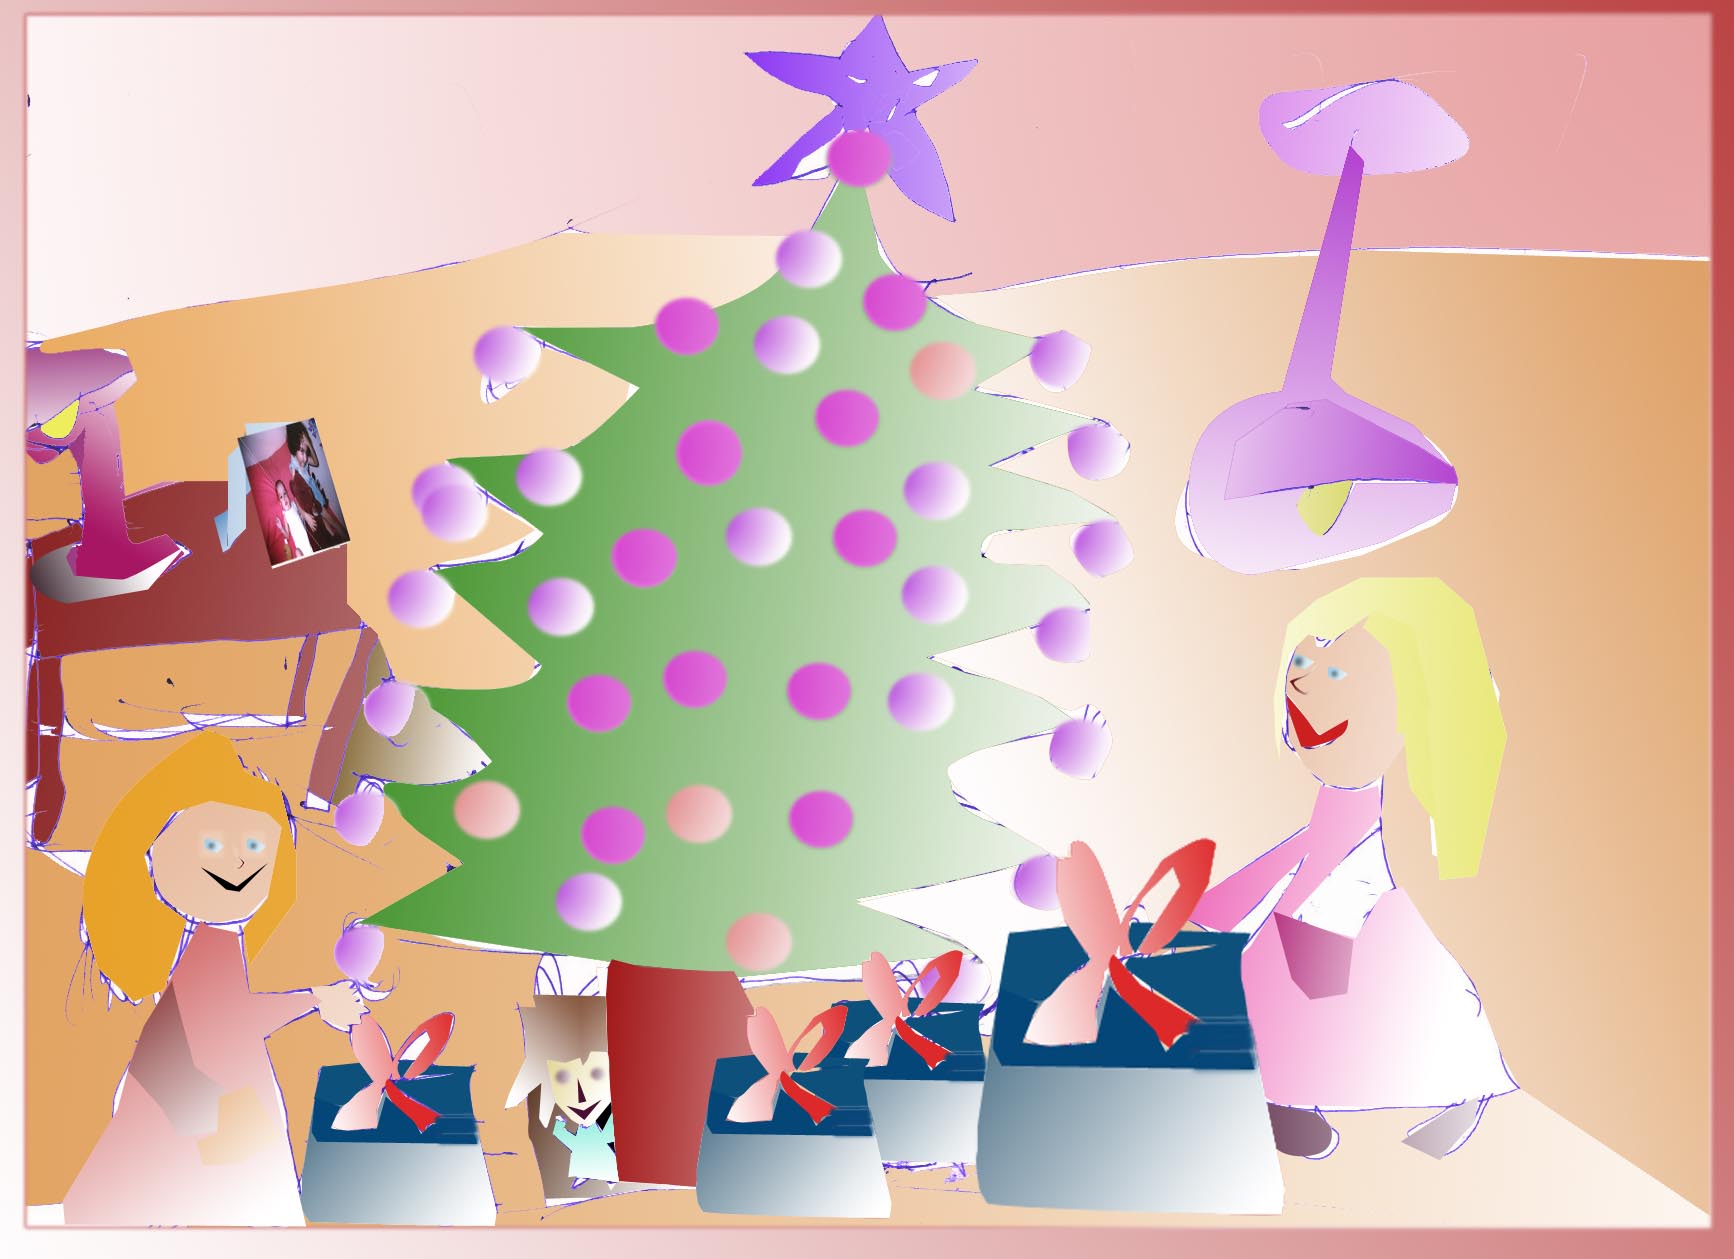 Dibujo realizado en la Navidad de 2003. Pincha para verlo más grande